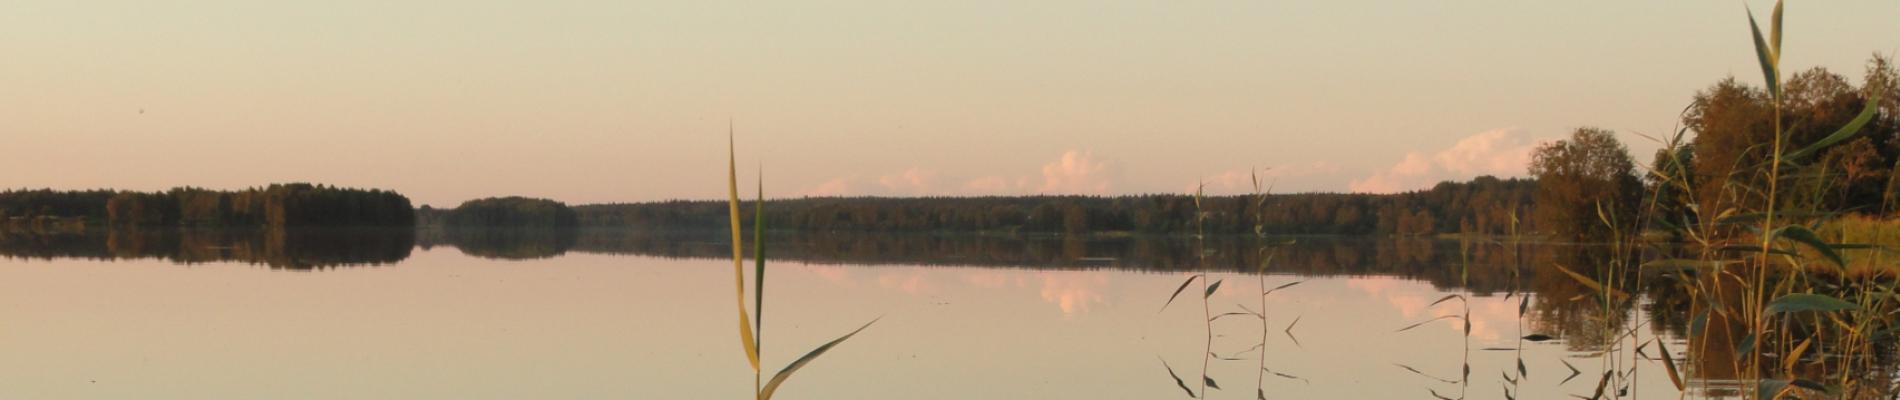 Piipsjärvi